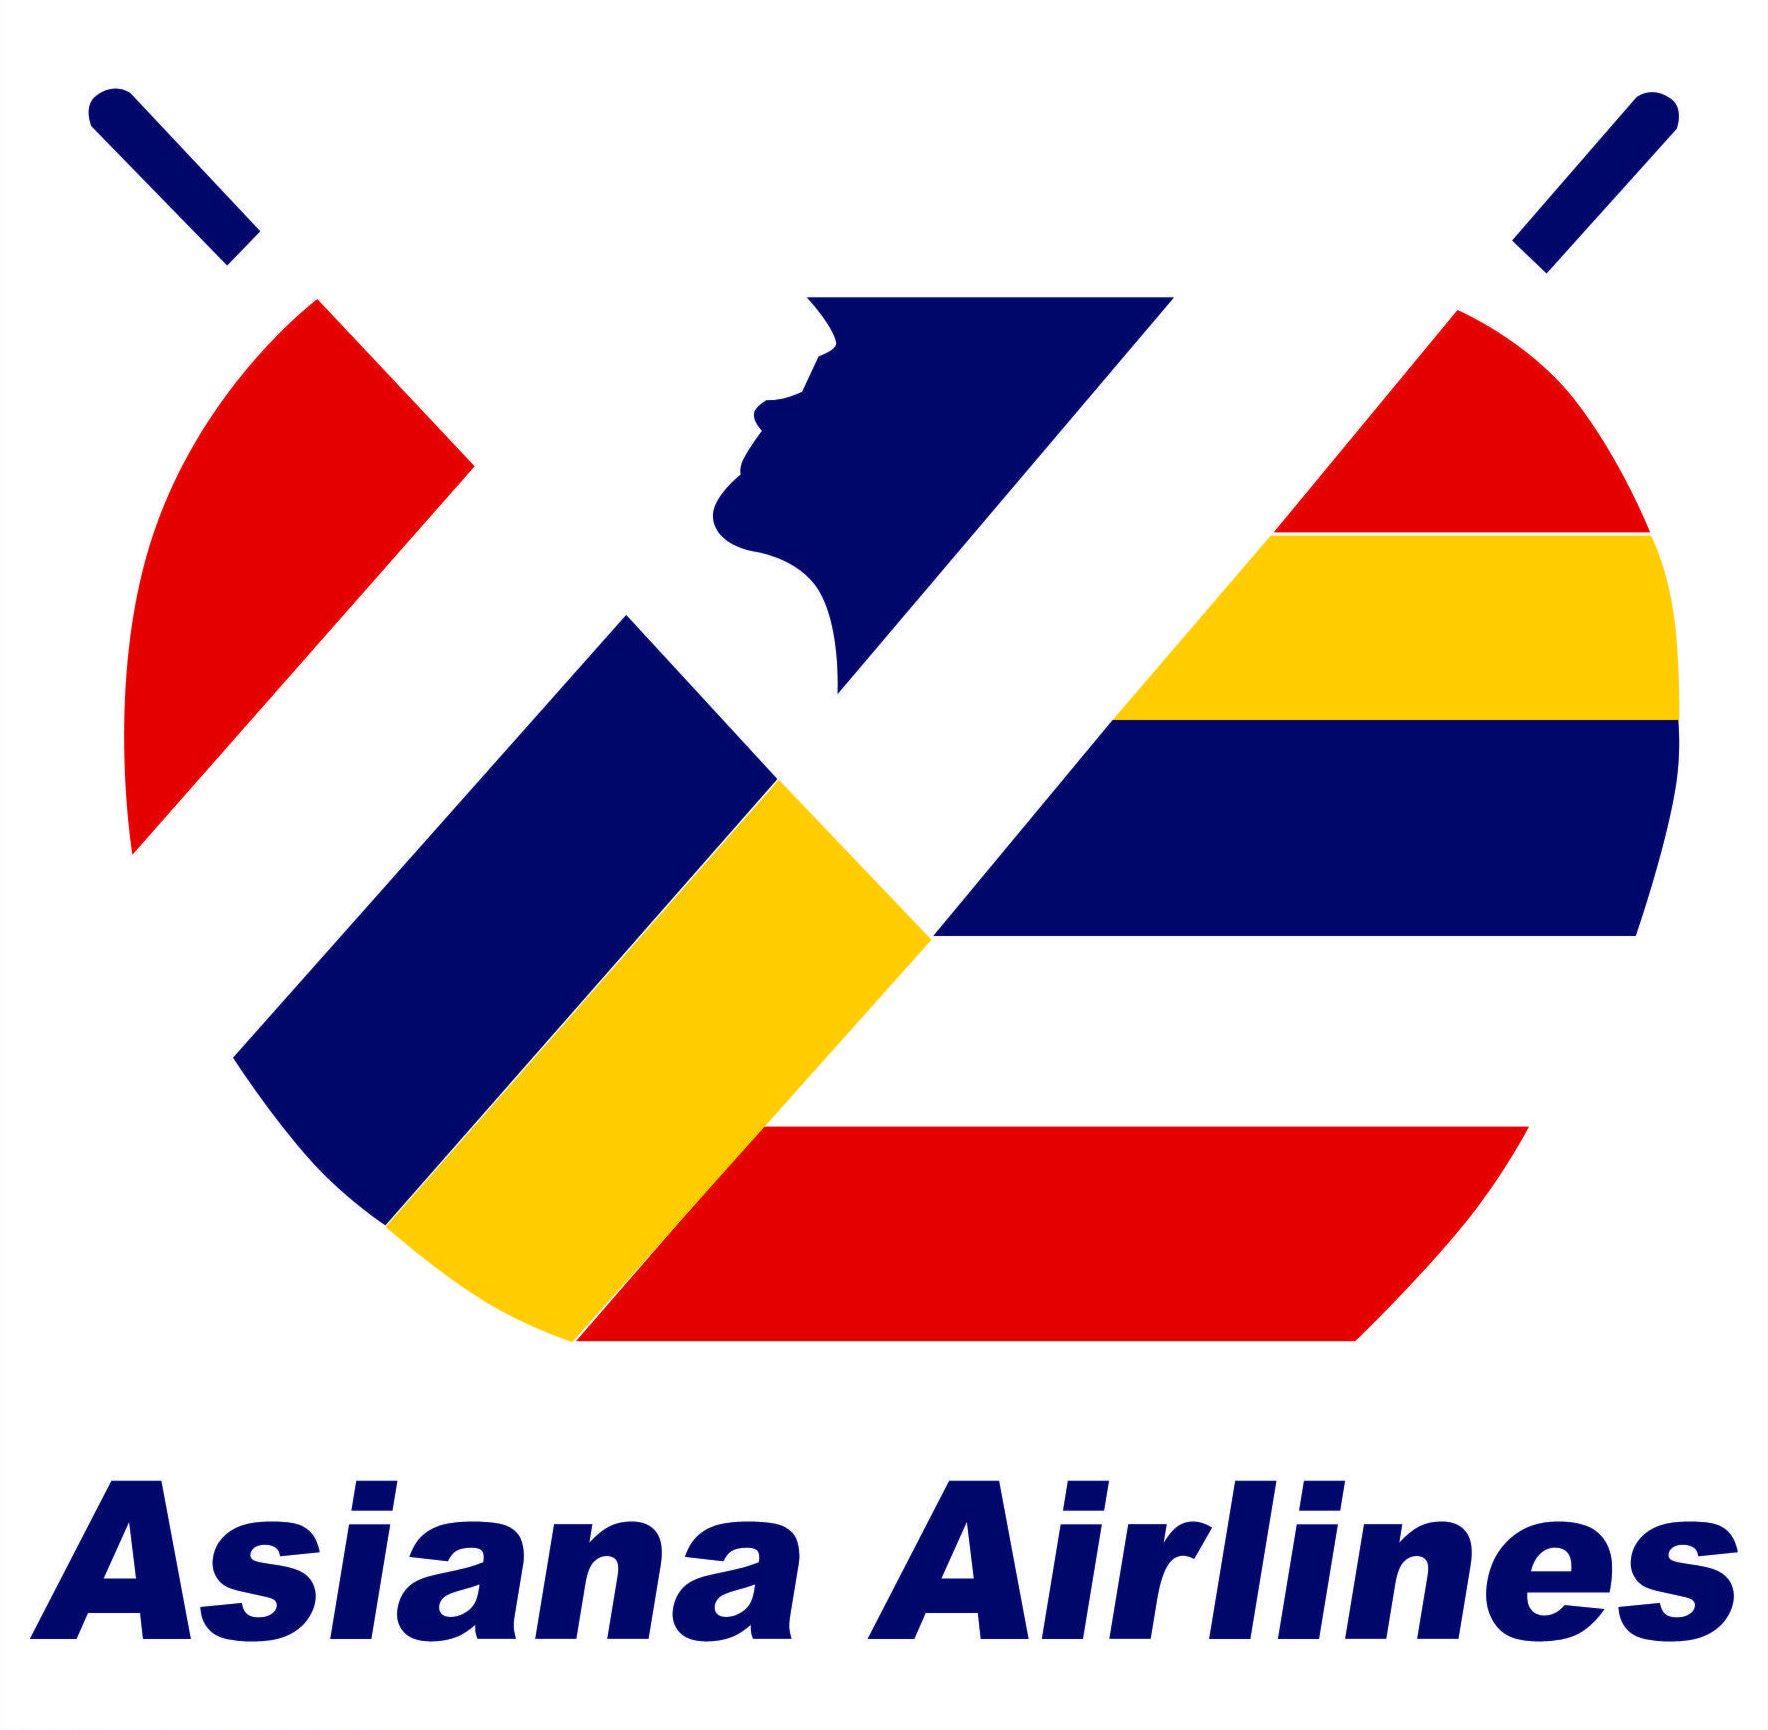 South Korean Company Logo - Asiana Airlines logos